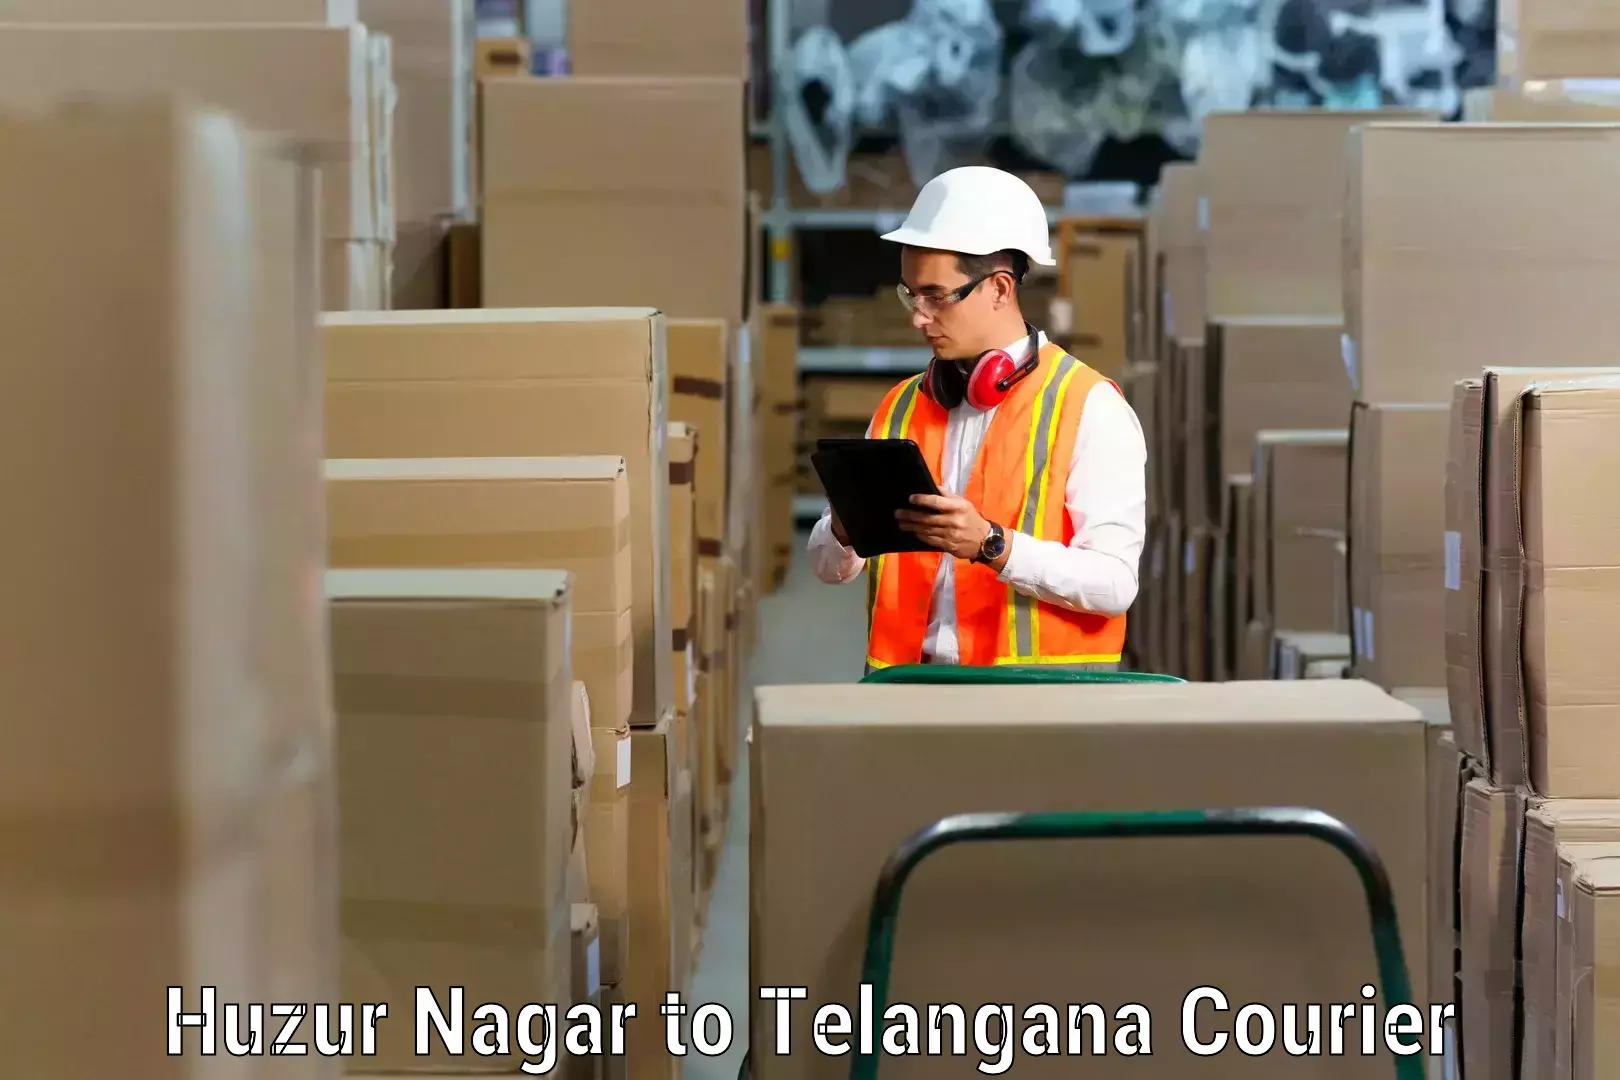 Furniture transport service Huzur Nagar to Nakerakal